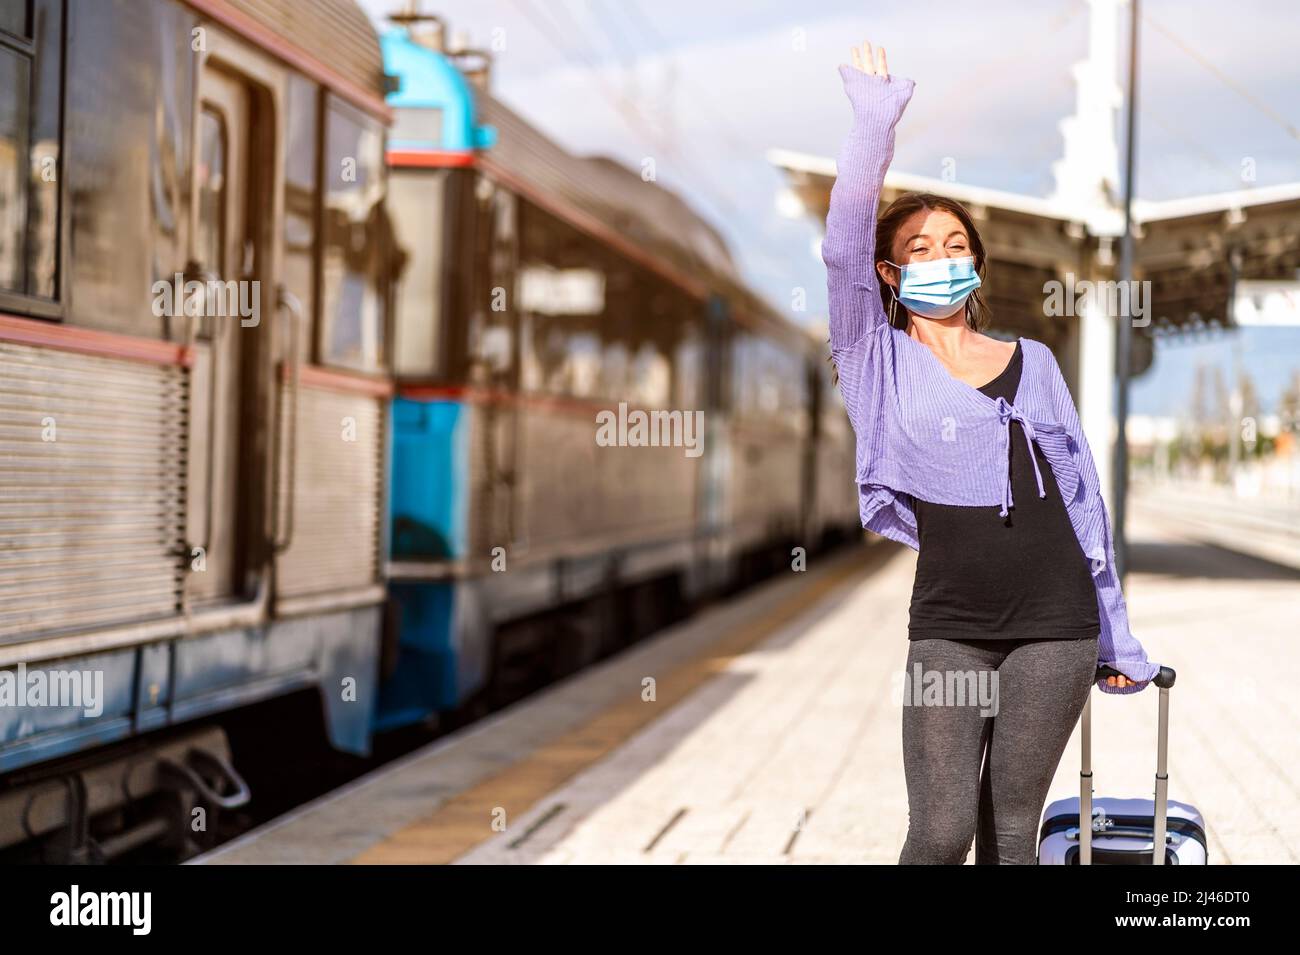 Eine junge Frau in Maske und mit Gepäck grüßt jemanden am Bahnsteig des Bahnhofs Stockfoto